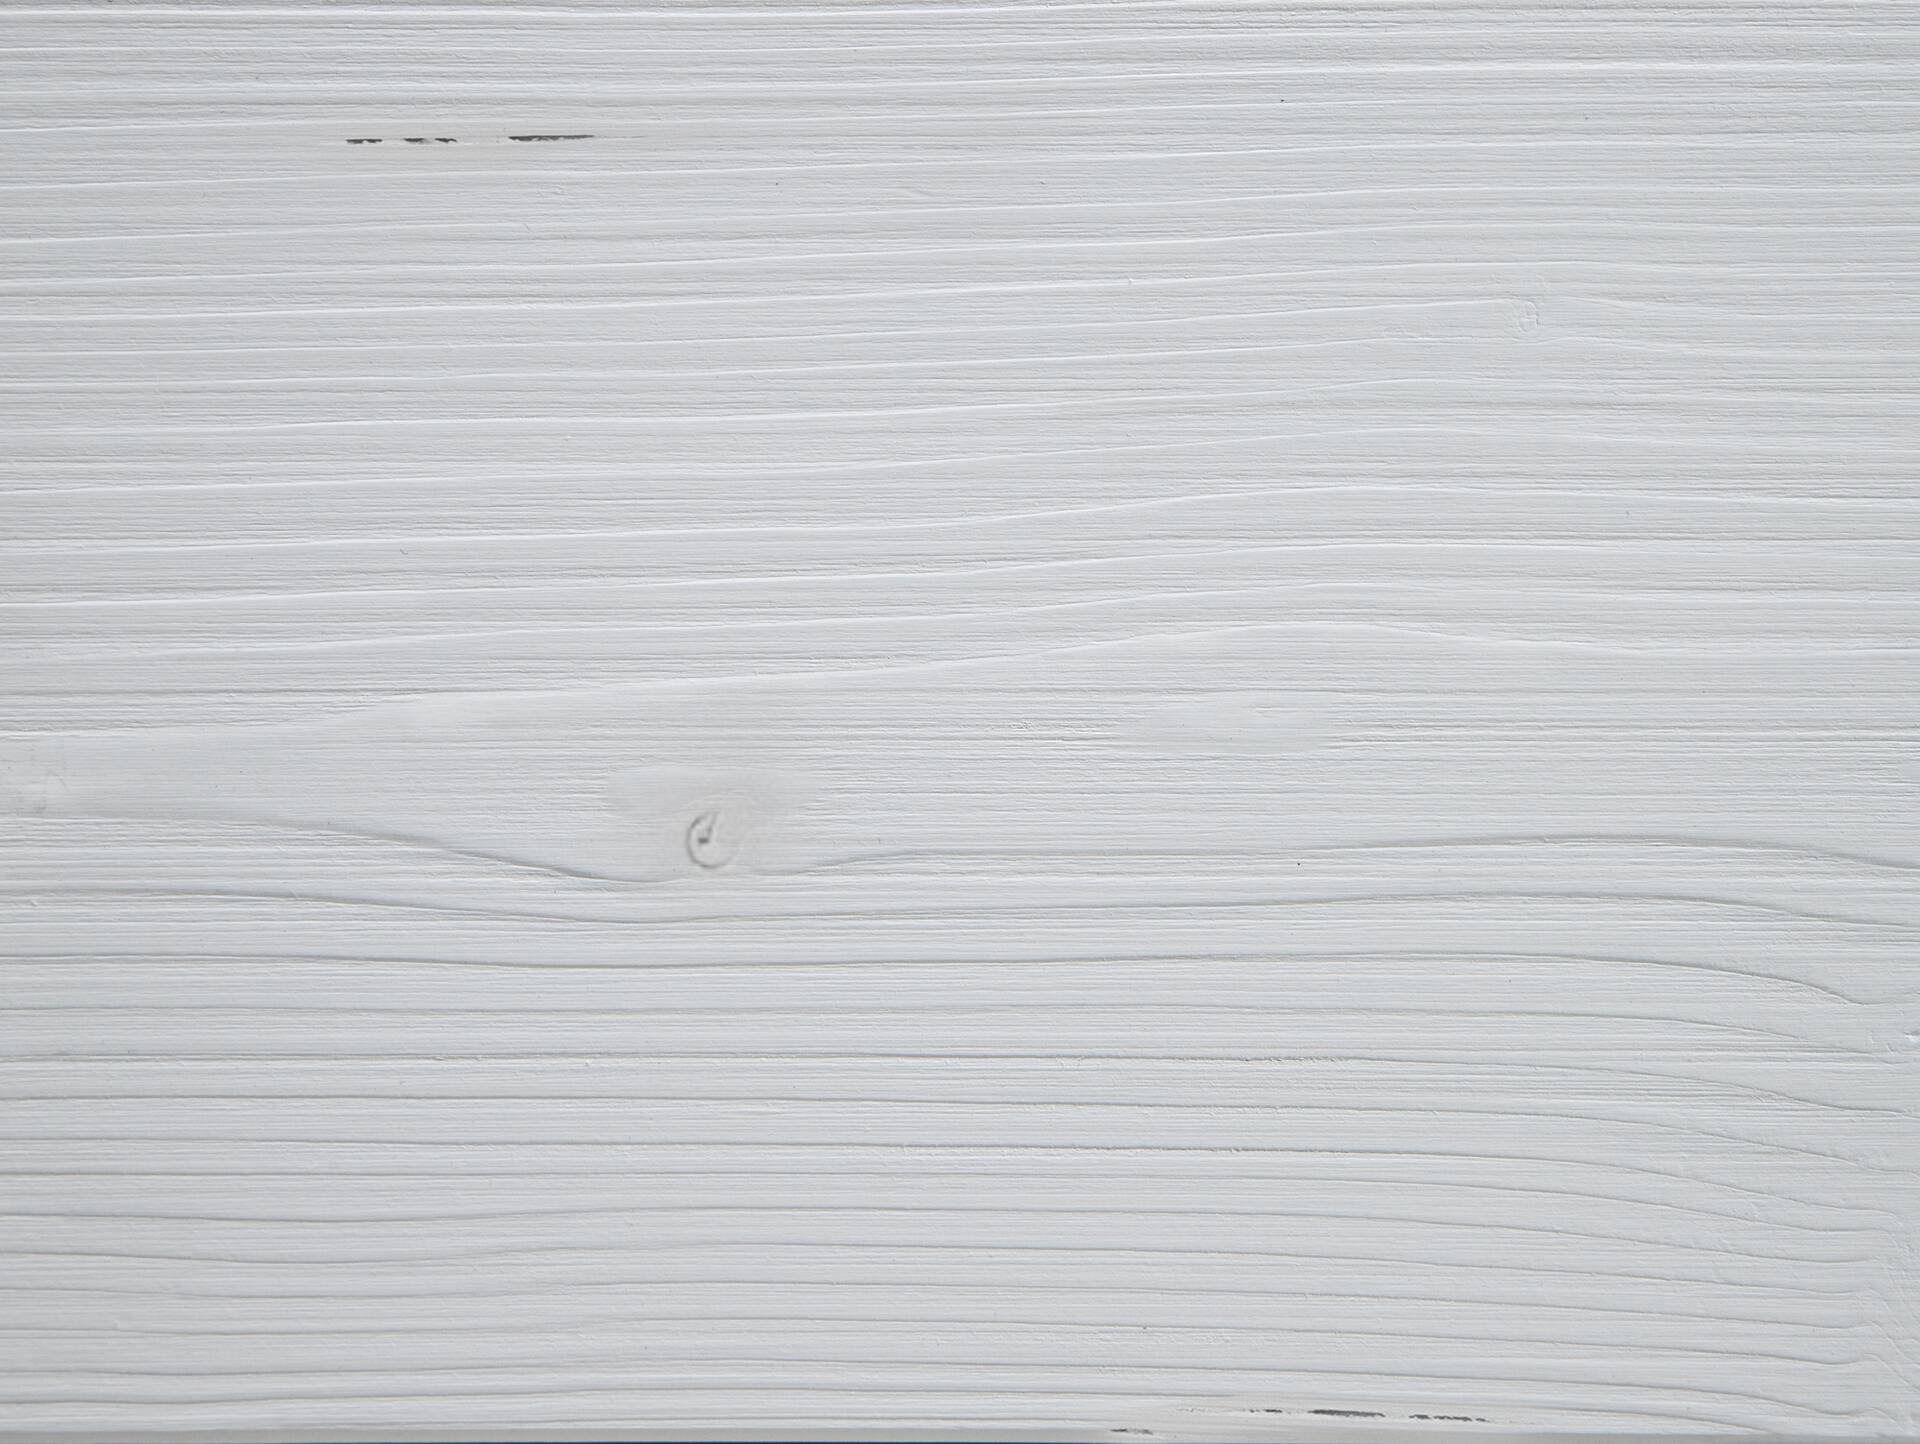 LUKY Bett Metallfuß, mit Polsterkopfteil, Material Massivholz, Fichte massiv 160 x 220 cm | weiss | Kunstleder Schwarz